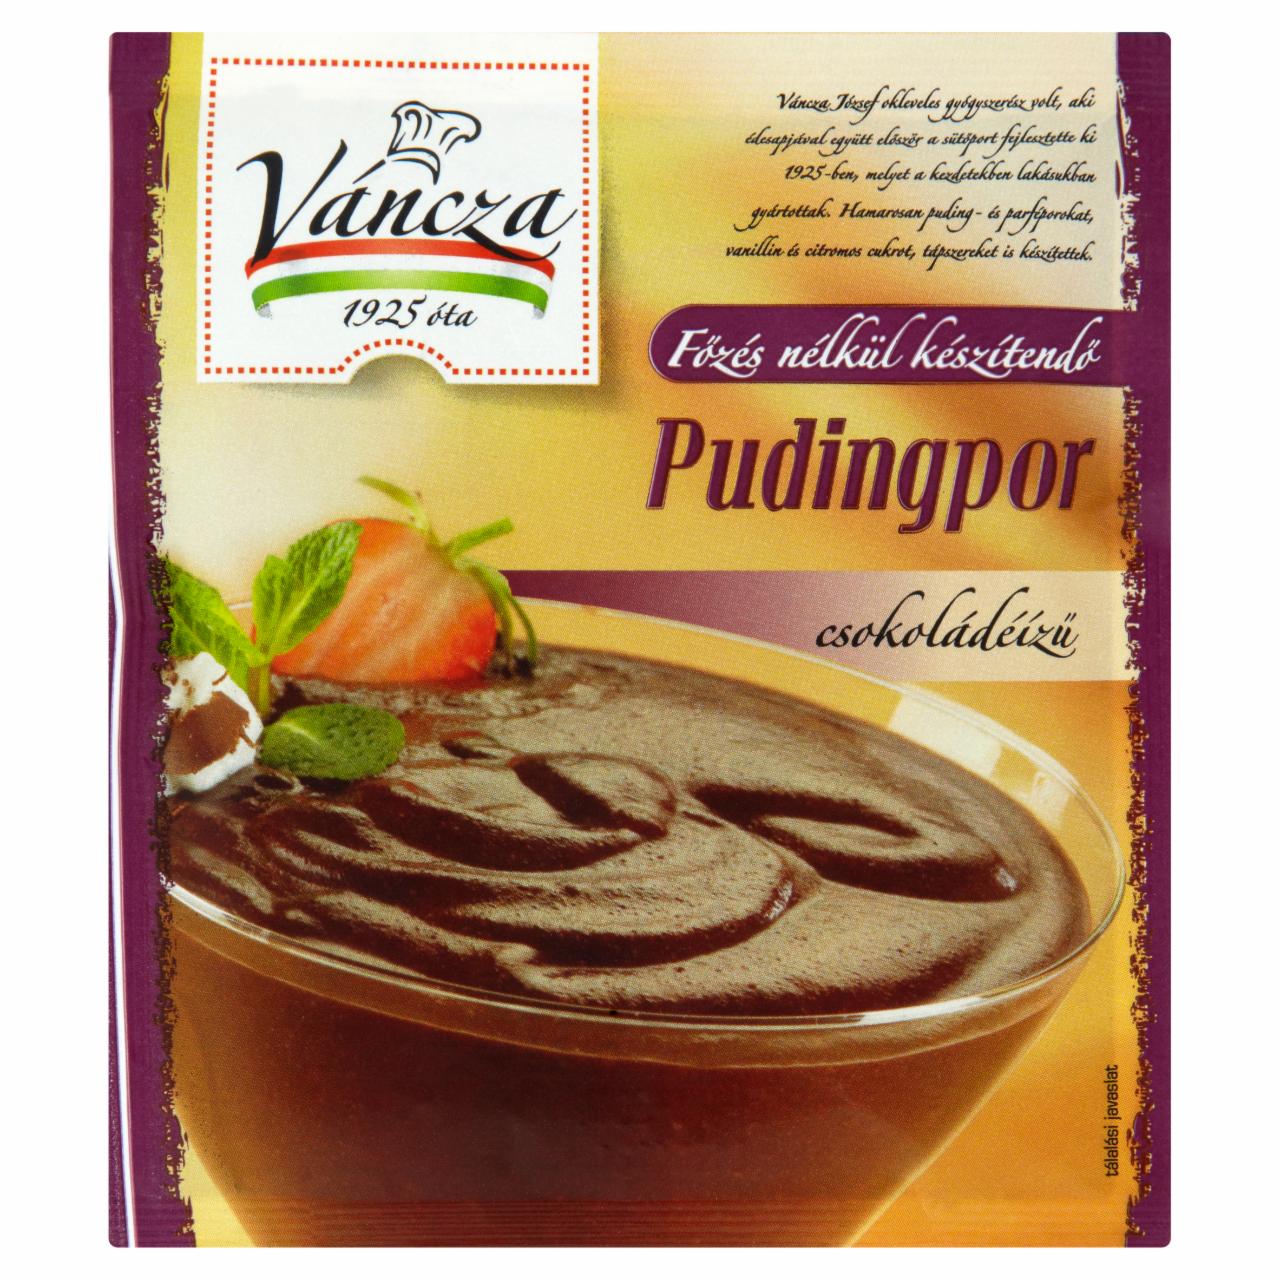 Képek - Váncza főzés nélkül készítendő csokoládéízű pudingpor 60 g